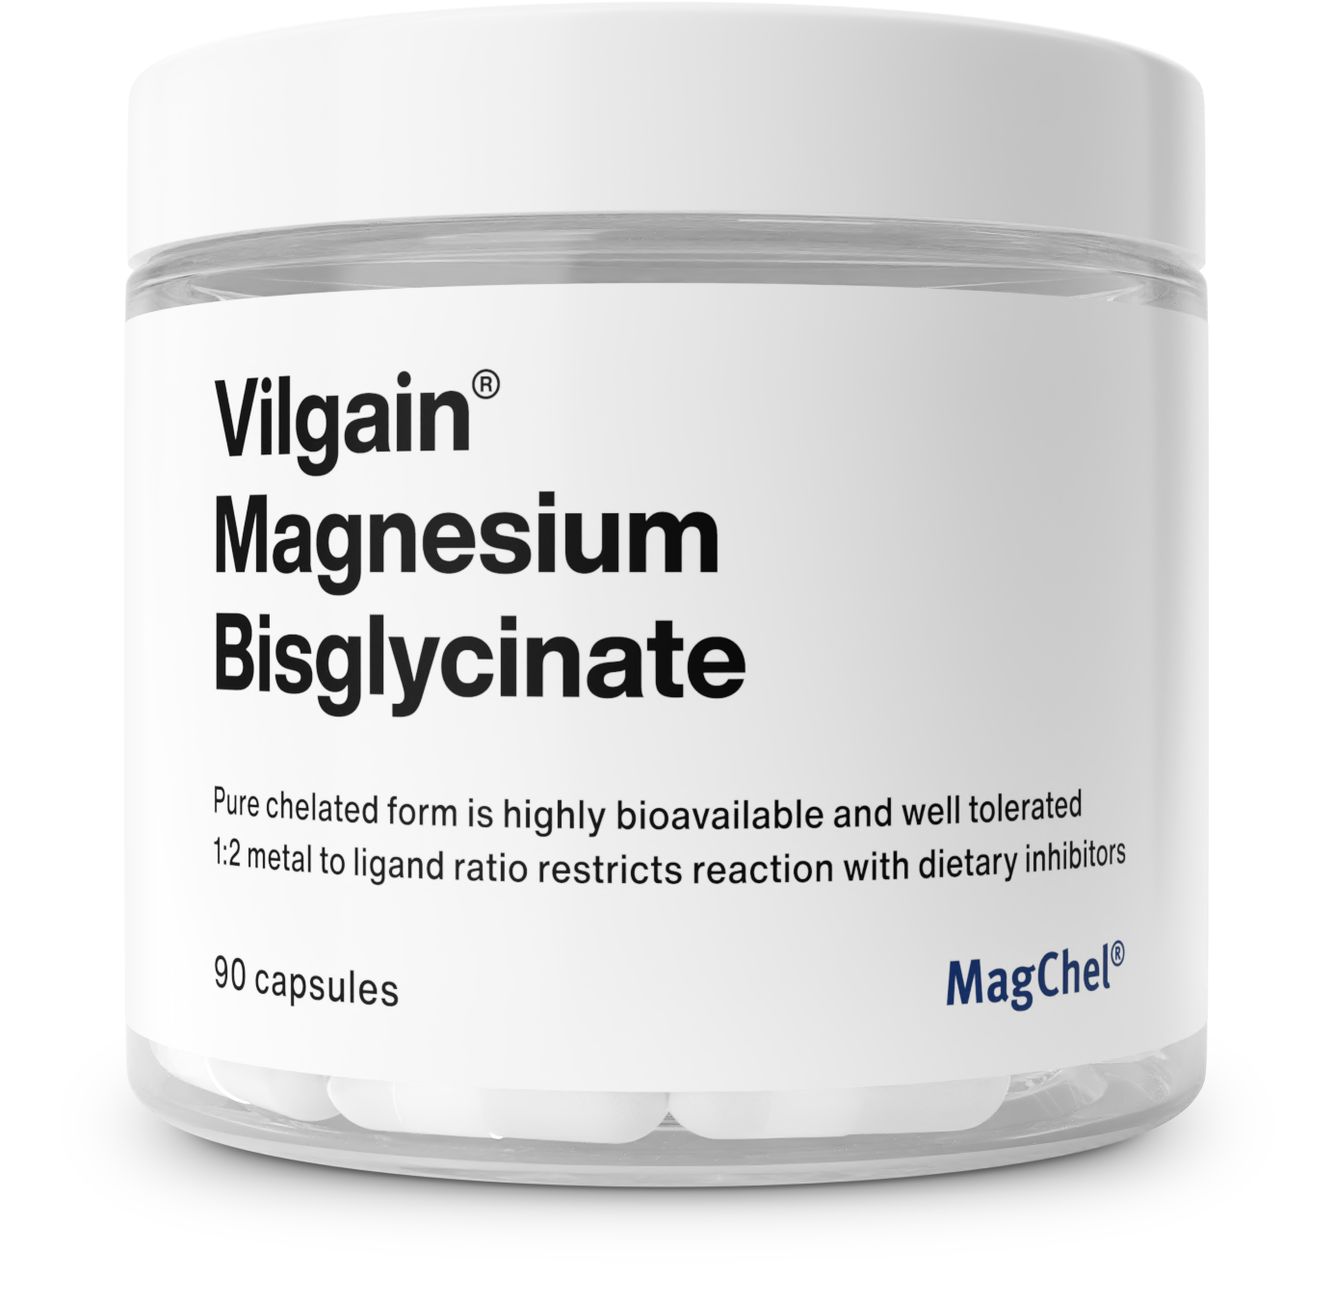 Vilgain Magnesium Bisglycinate